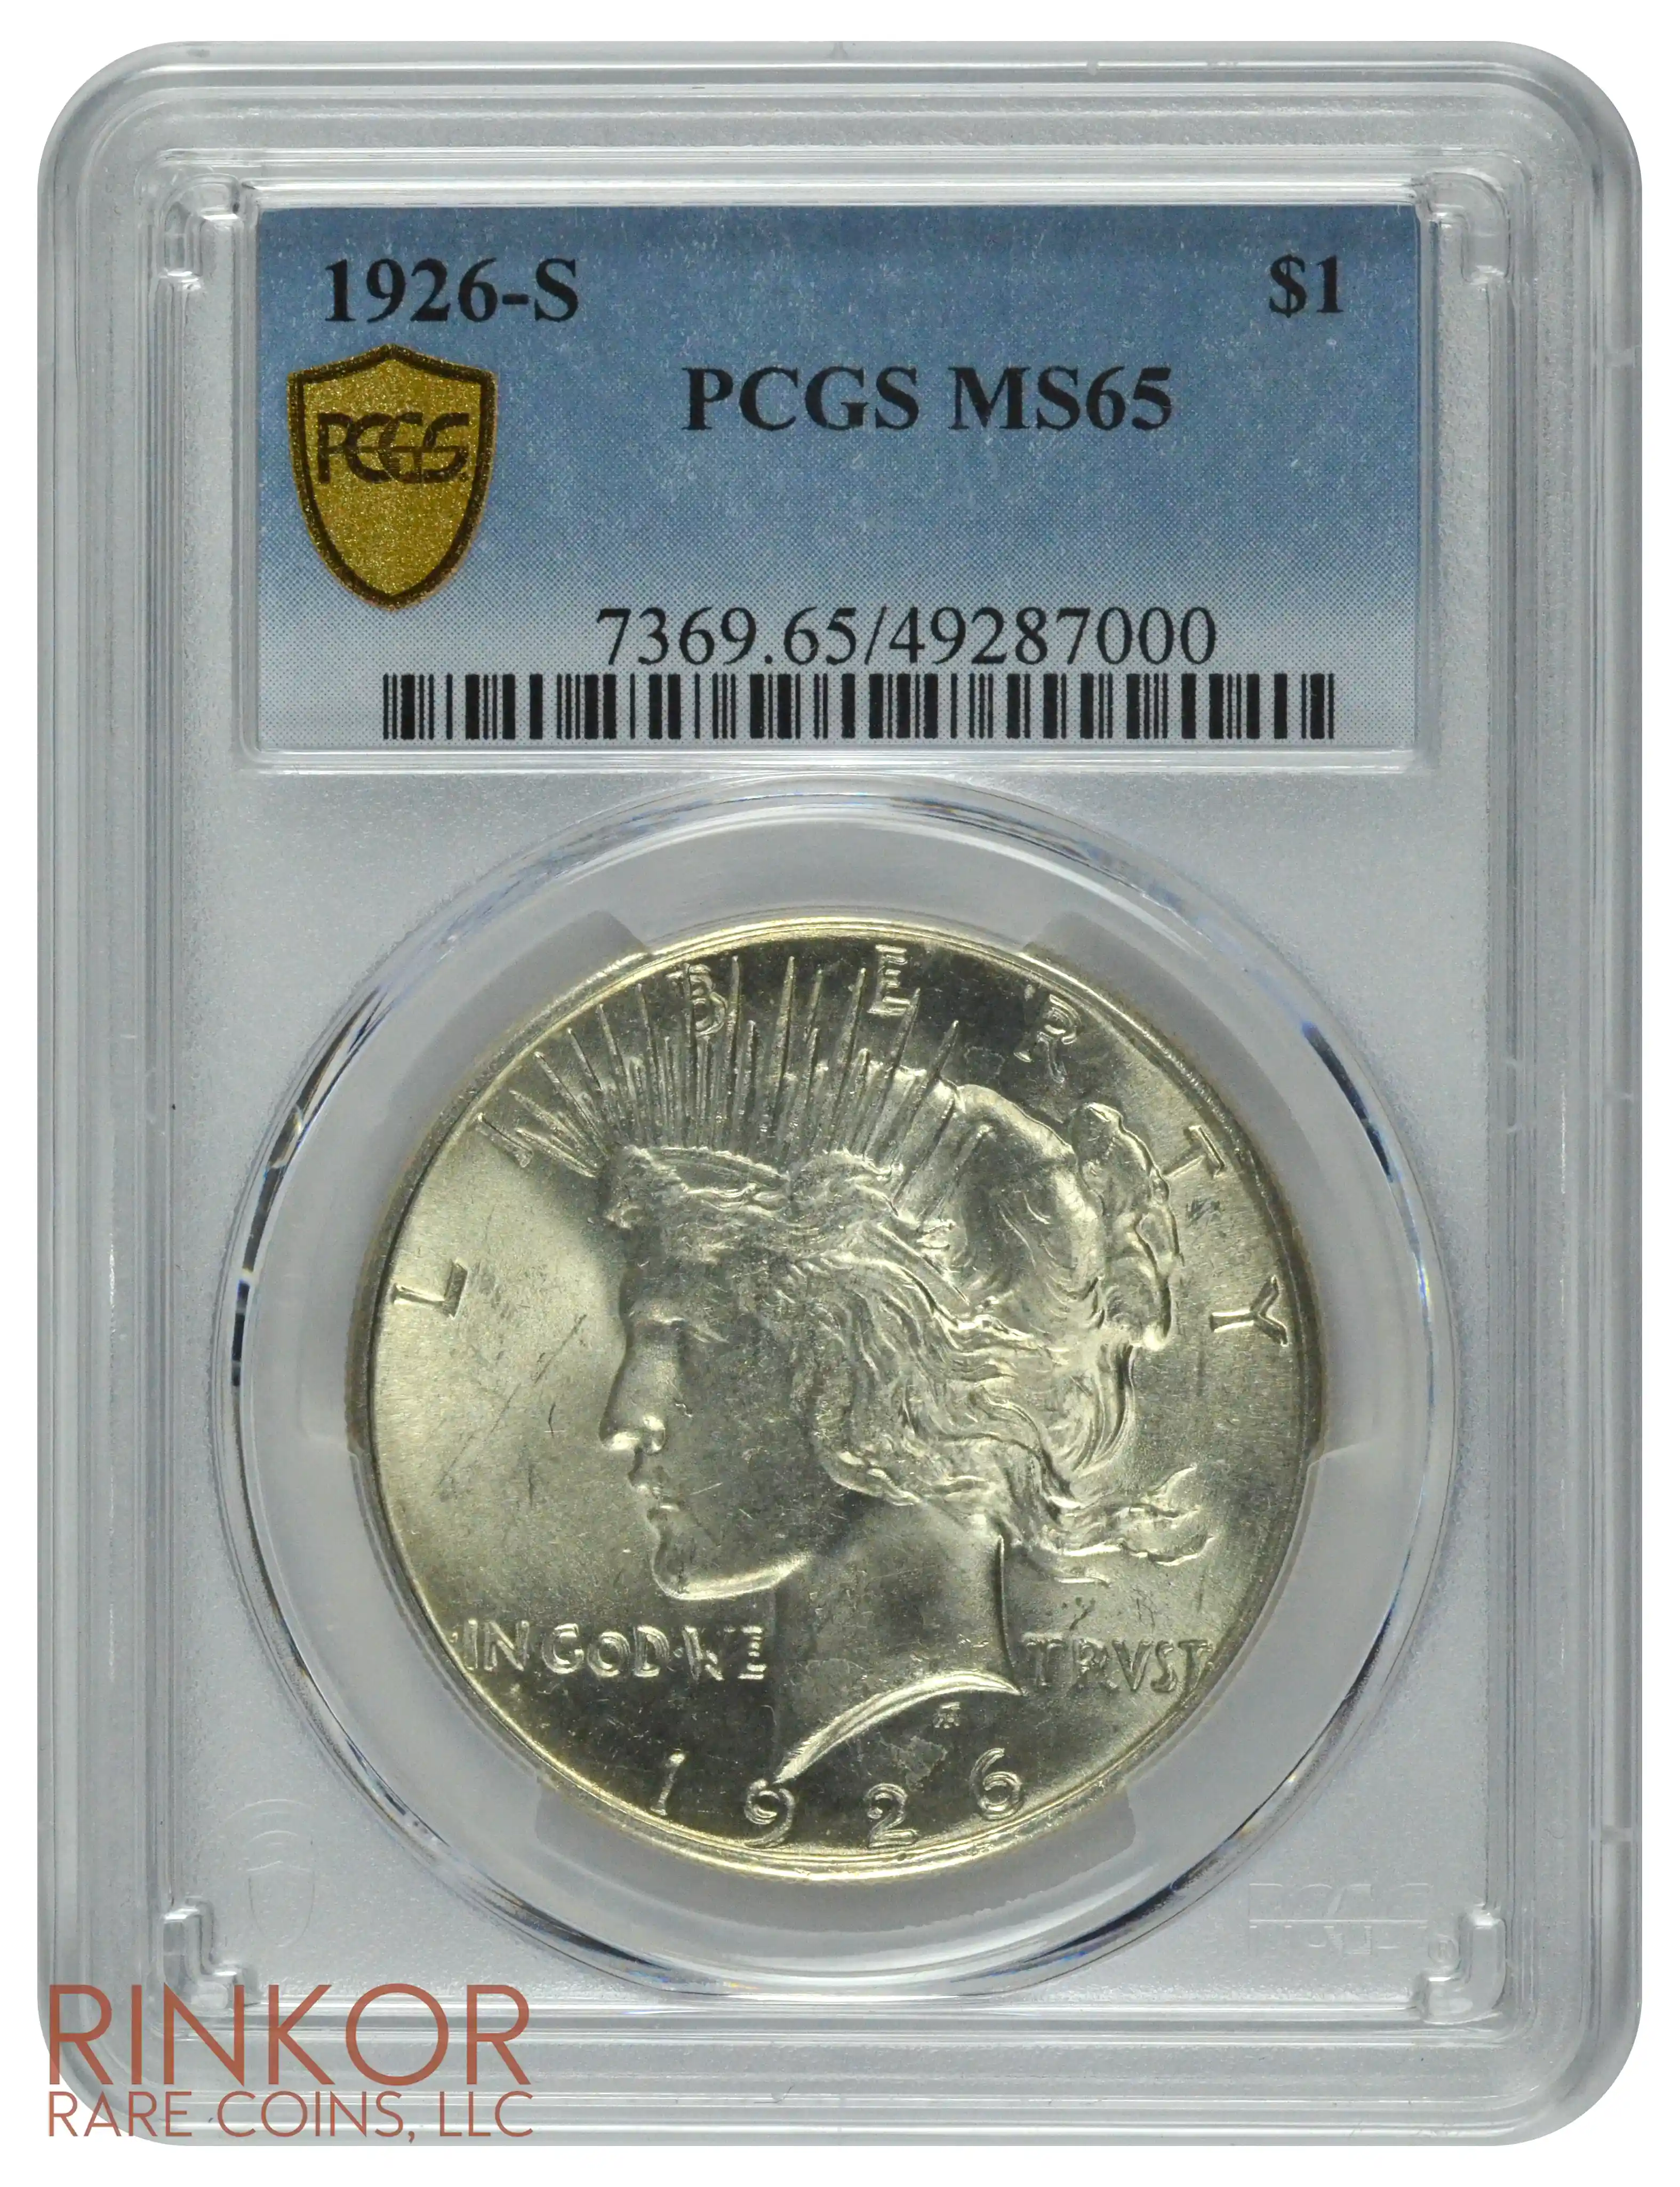 1926-S $1 PCGS MS 65